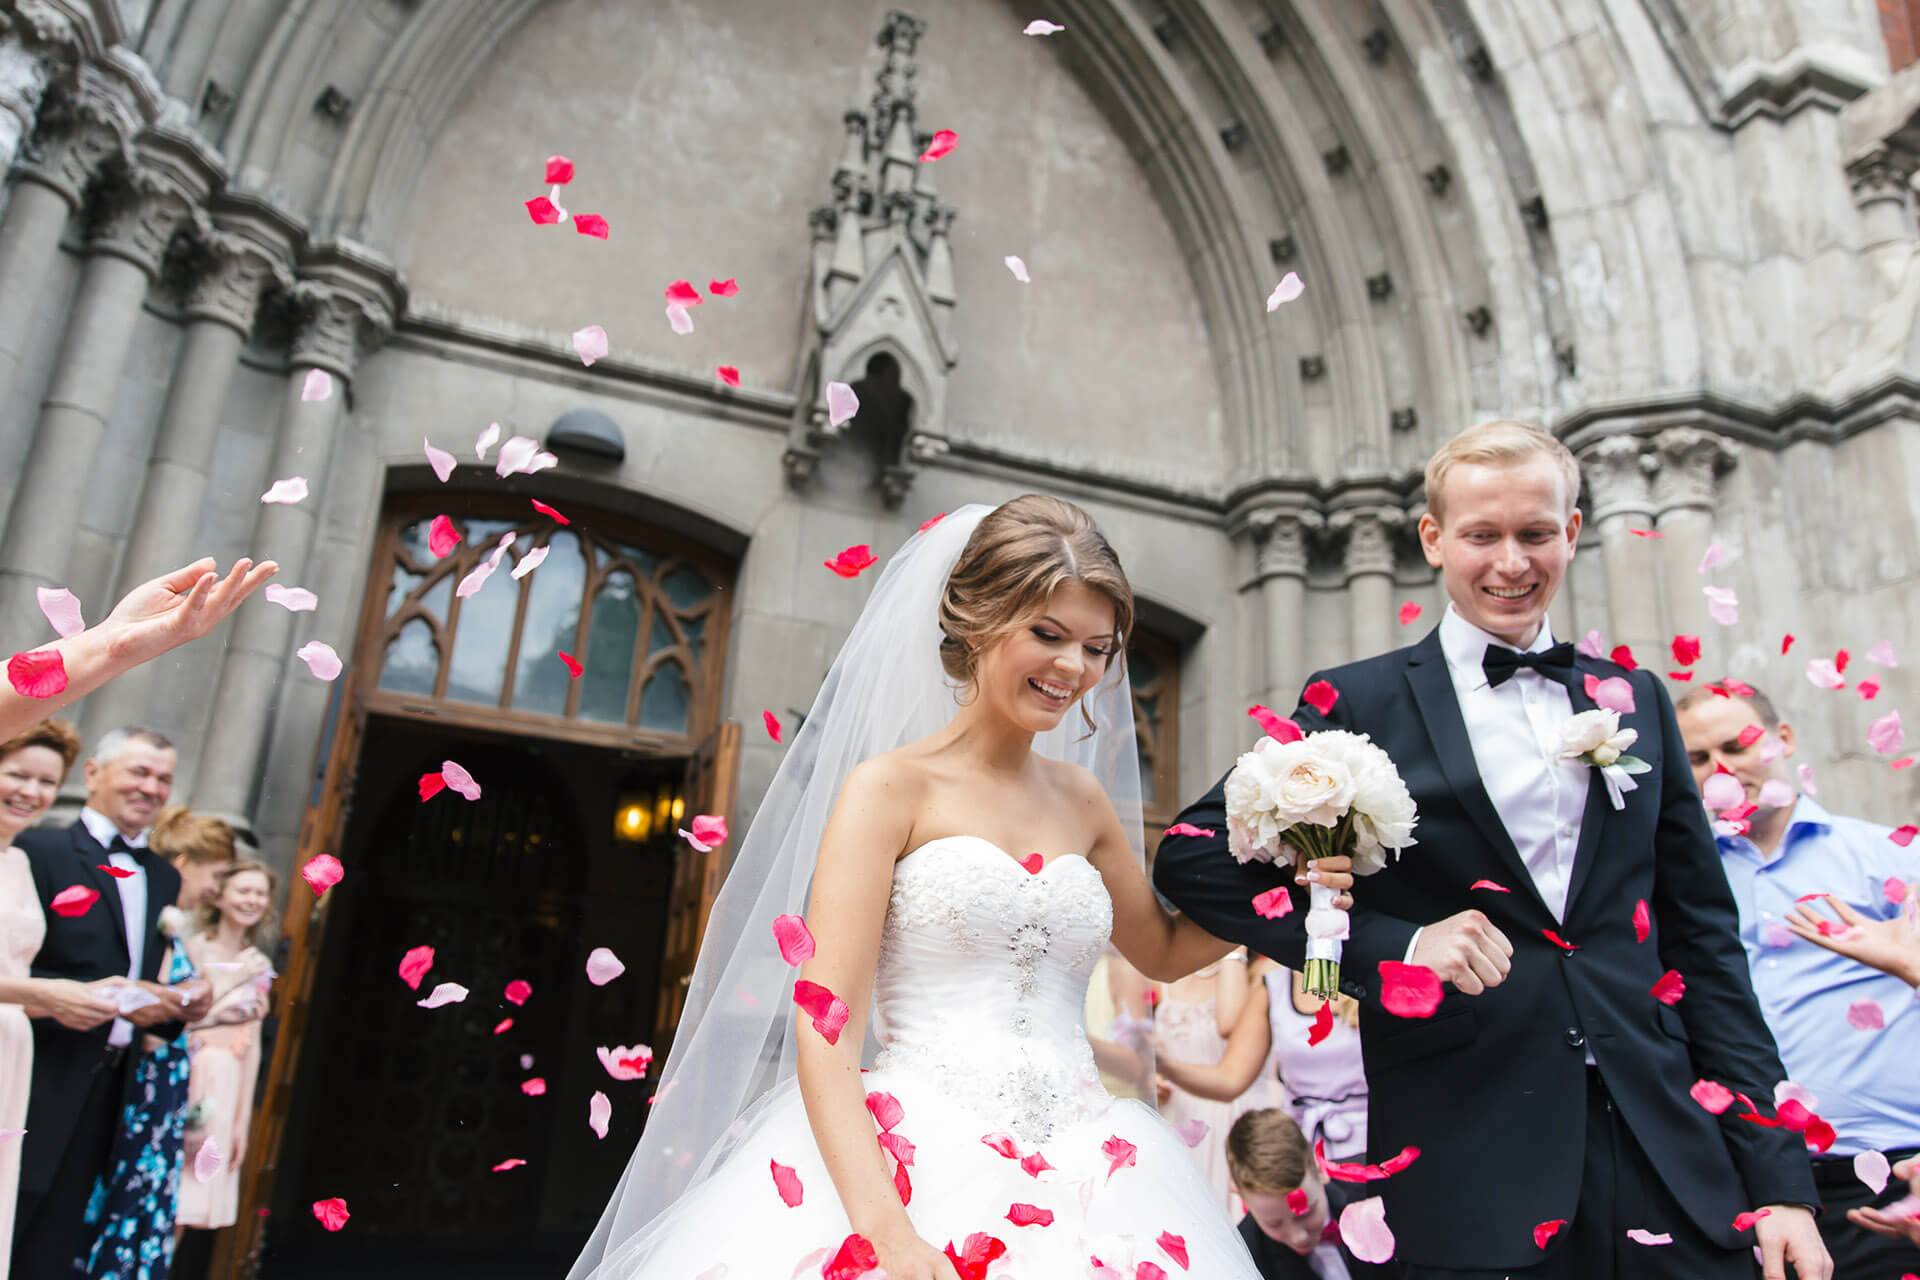 Выйти замуж за канадца как способ иммиграции или супружеское спонсорство